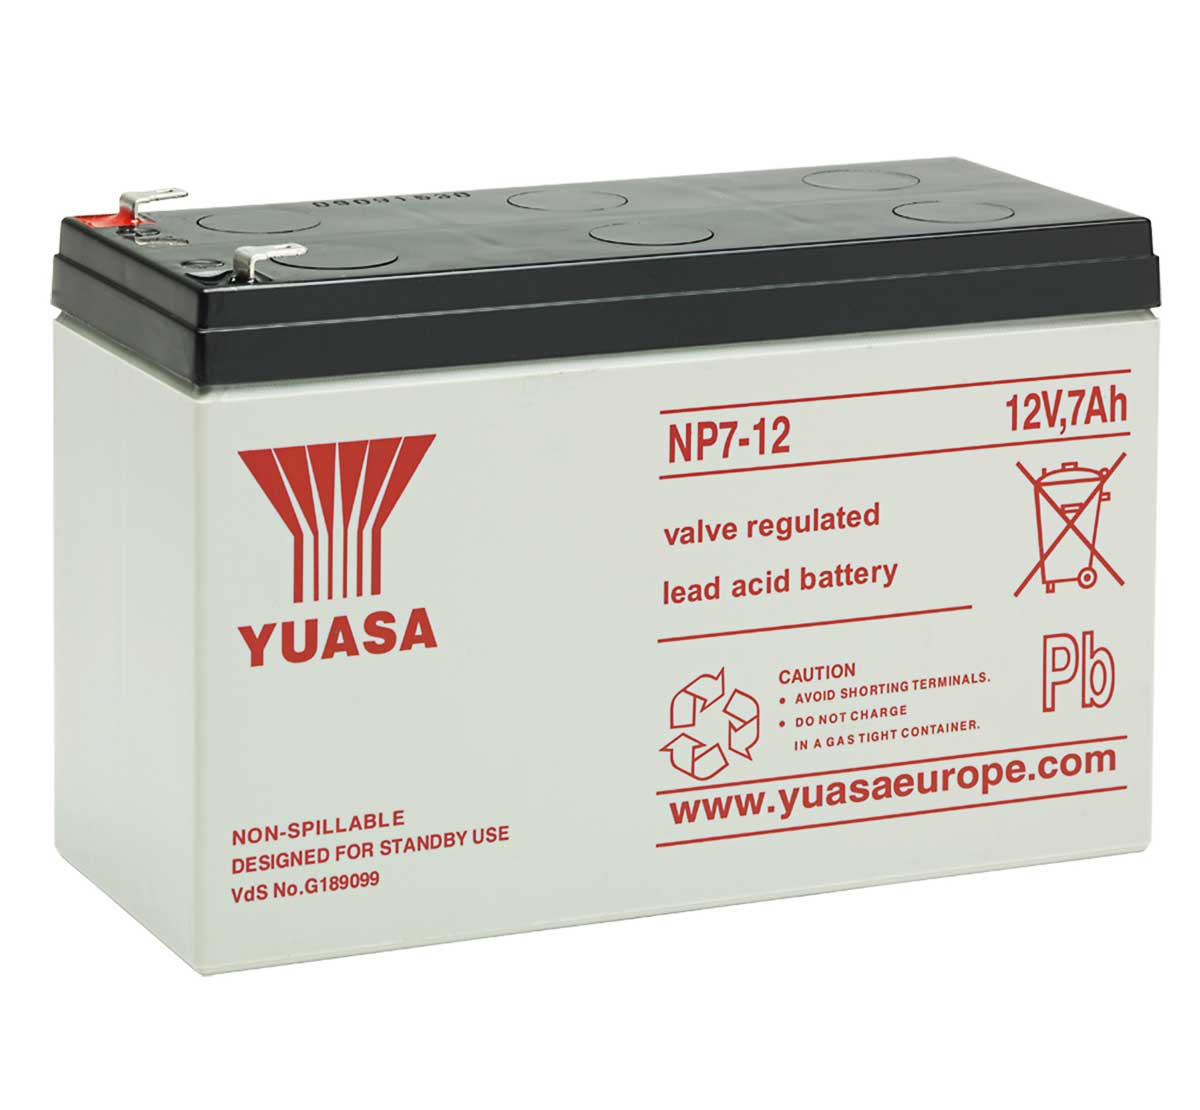 Yuasa NP7-12 12V 7Ah VRLA Lead Acid Battery